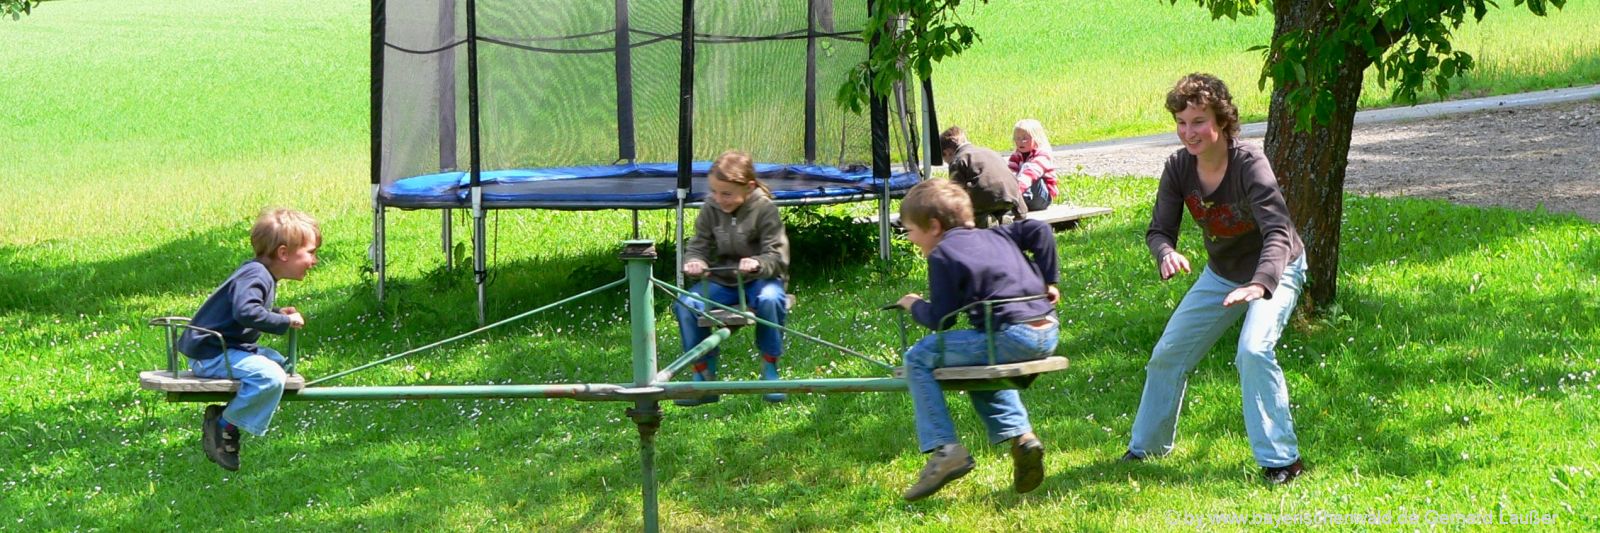 Kinderbauernhof im Bayerischen Wald mit Spielplatz